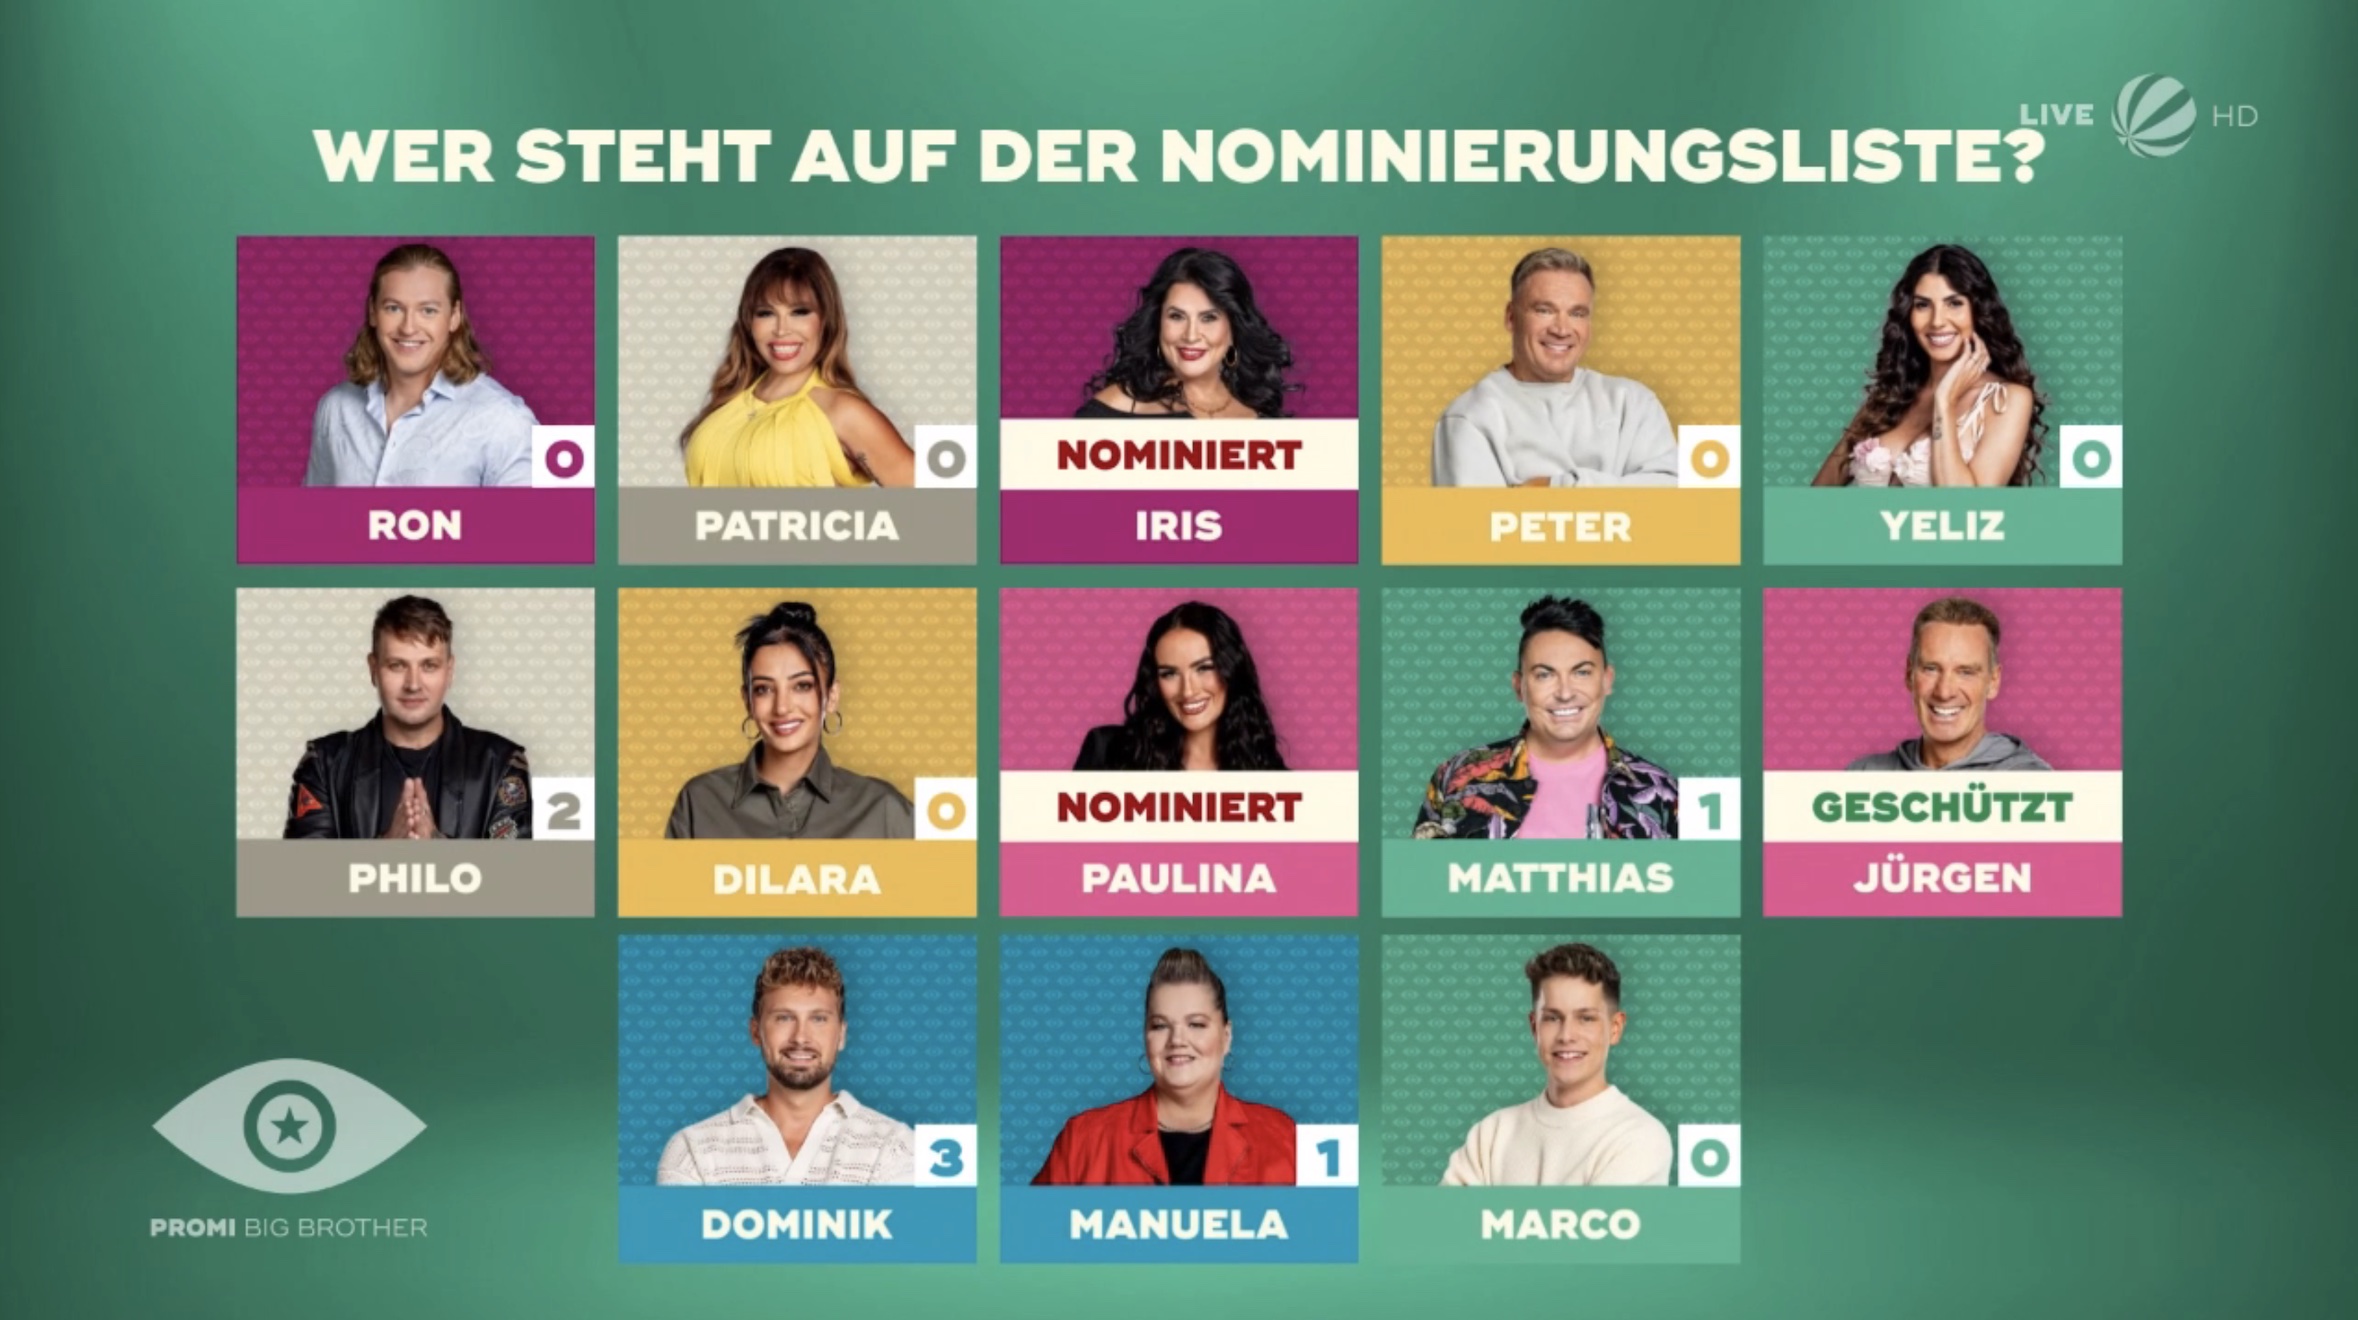 Promi Big Brother 2023 Offene Nominierung: Iris nominiert, Jürgen geschützt 6